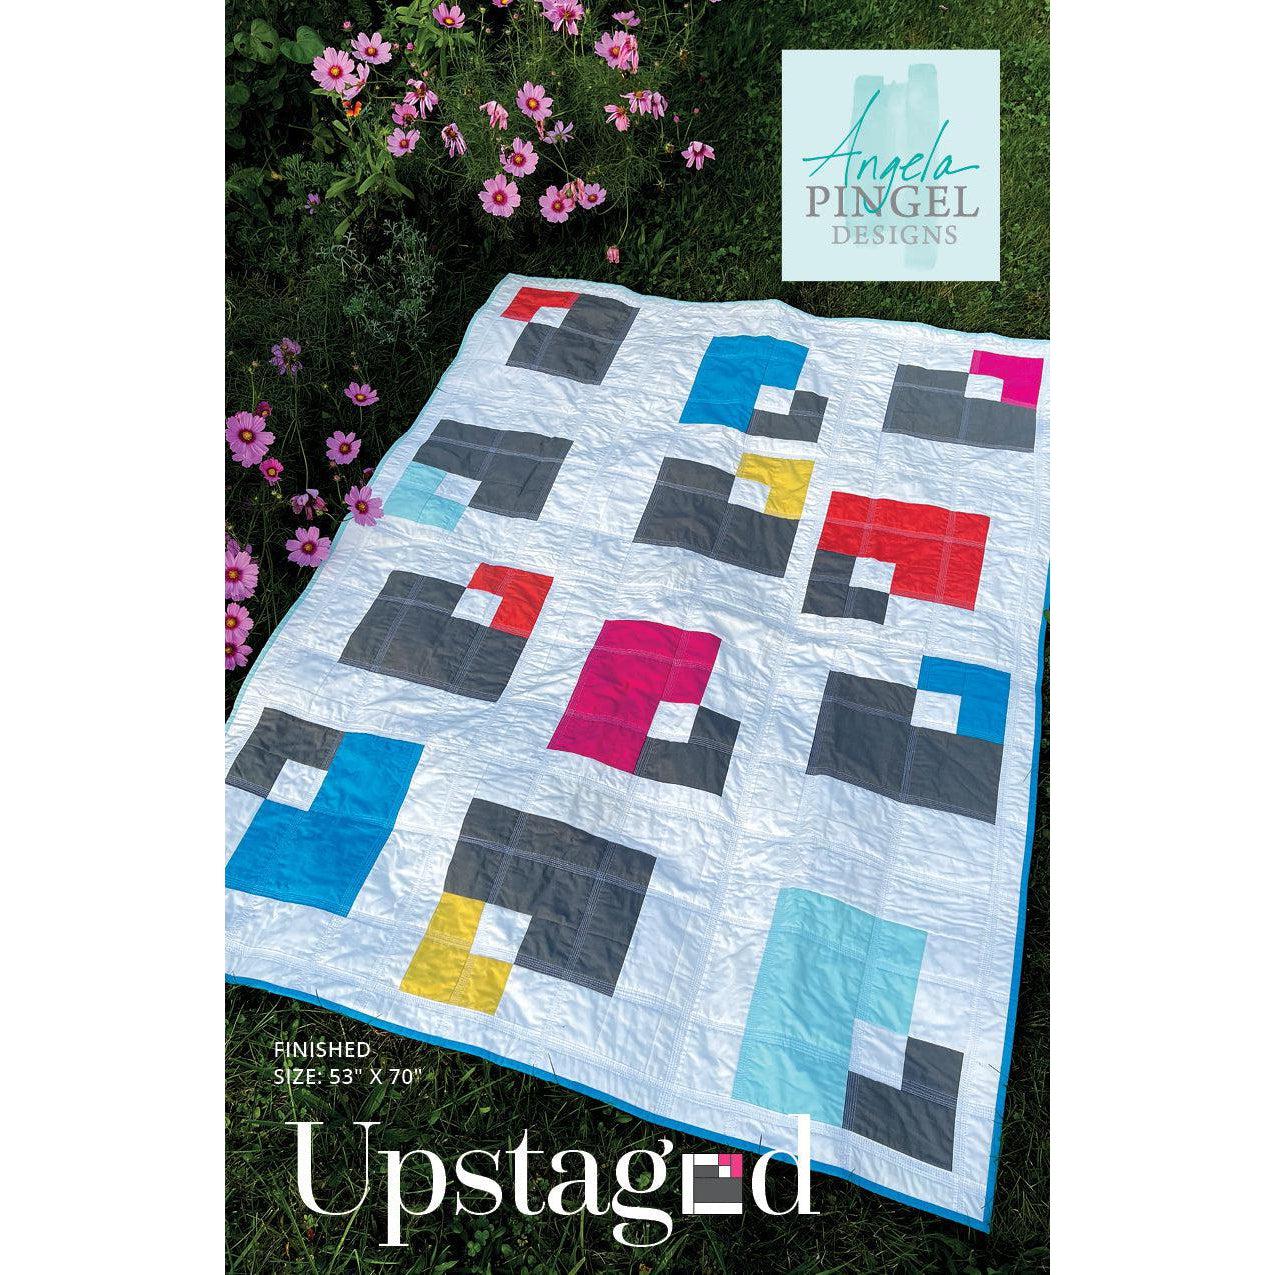 Upstaged Quilt Pattern-Angela Pingel Designs-My Favorite Quilt Store